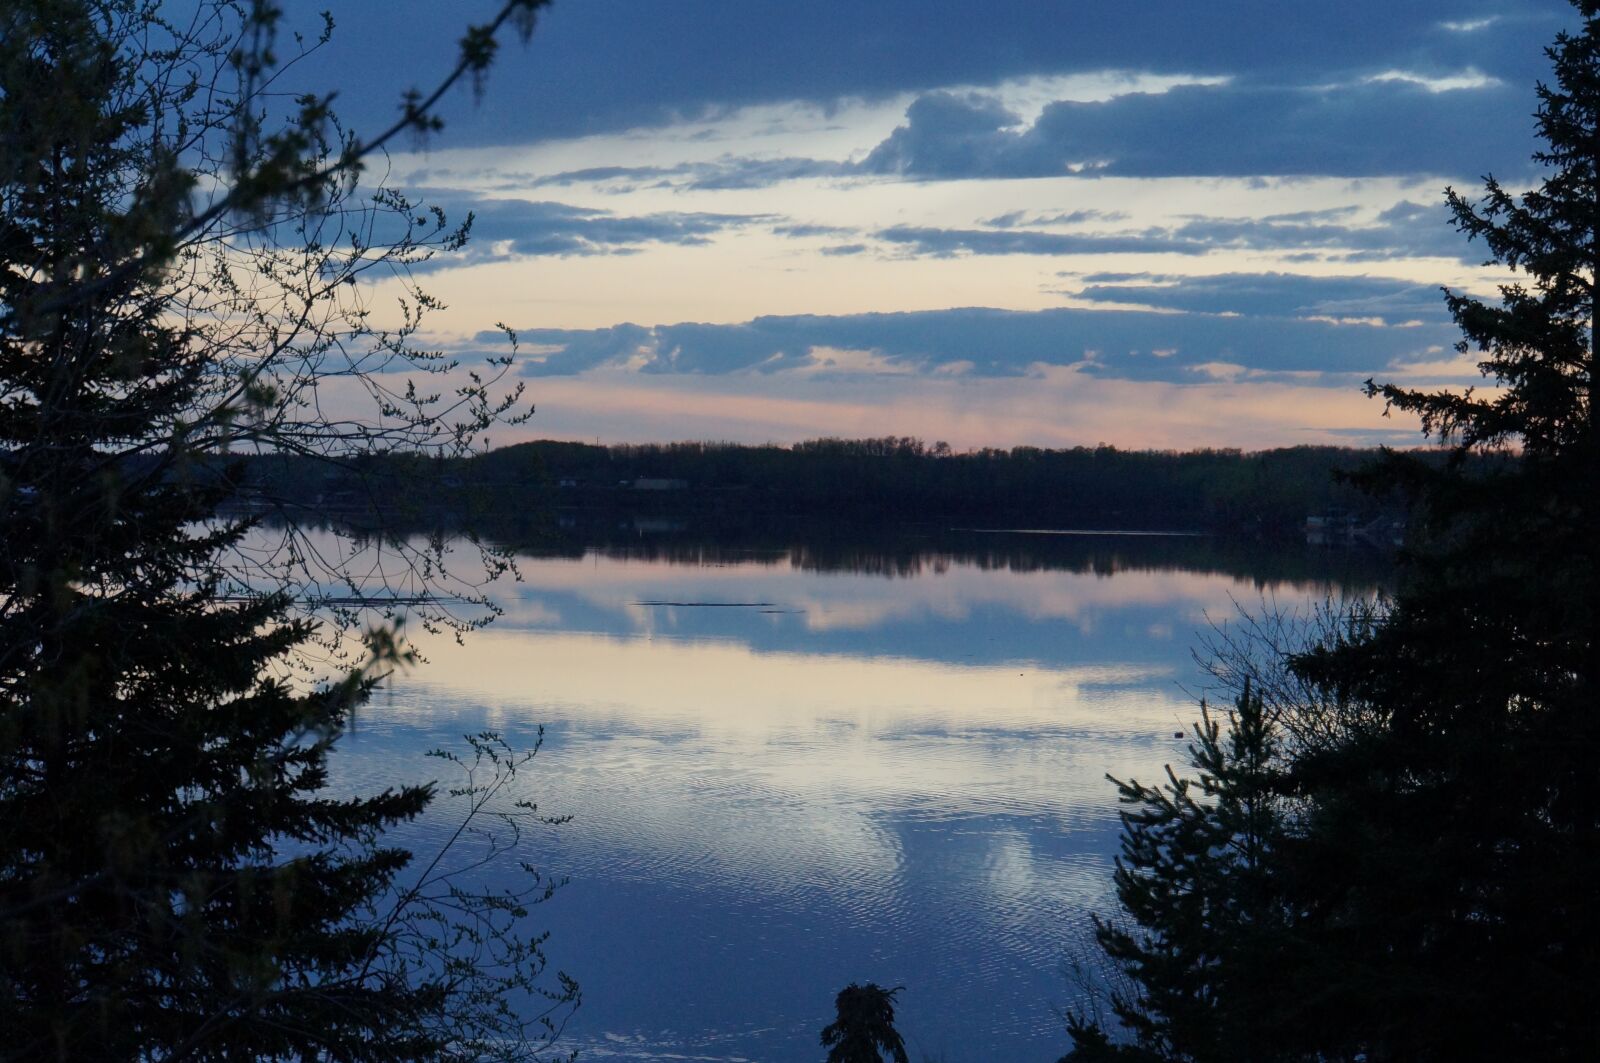 Sony Alpha NEX-F3 sample photo. Canadian sunset, lake, sunset photography